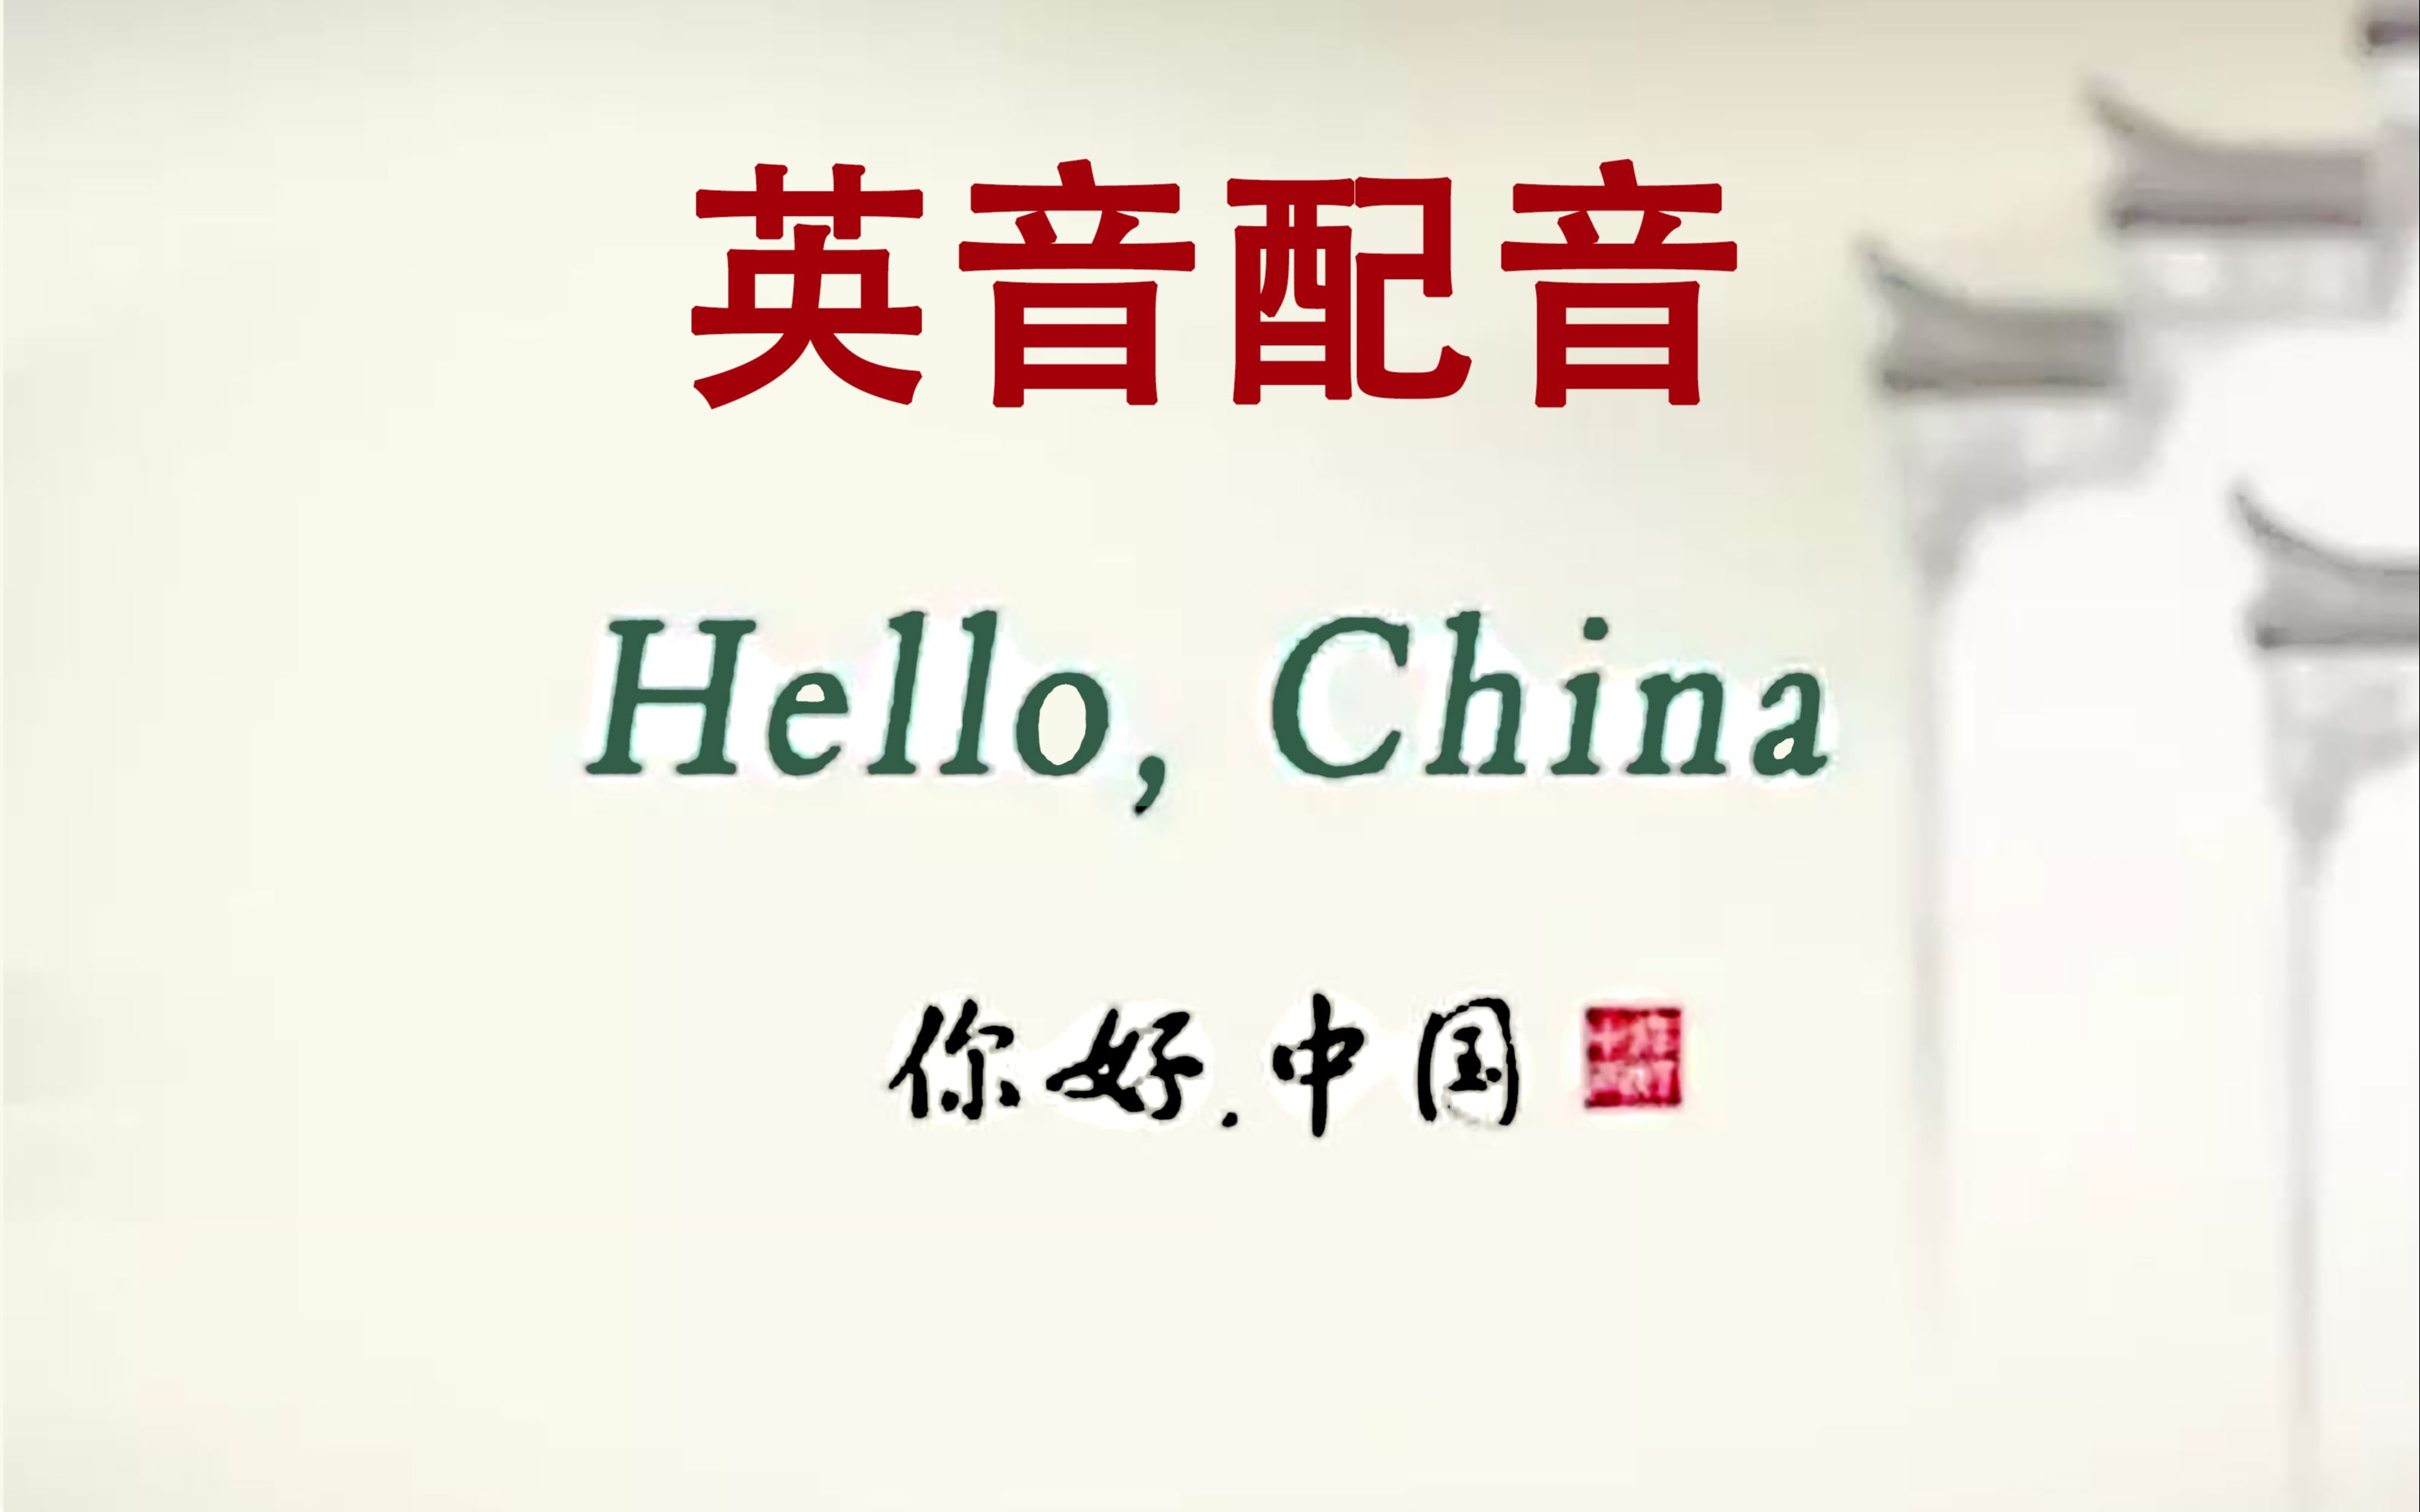 [图]【泰山】Hello China《你好中国》英音配音